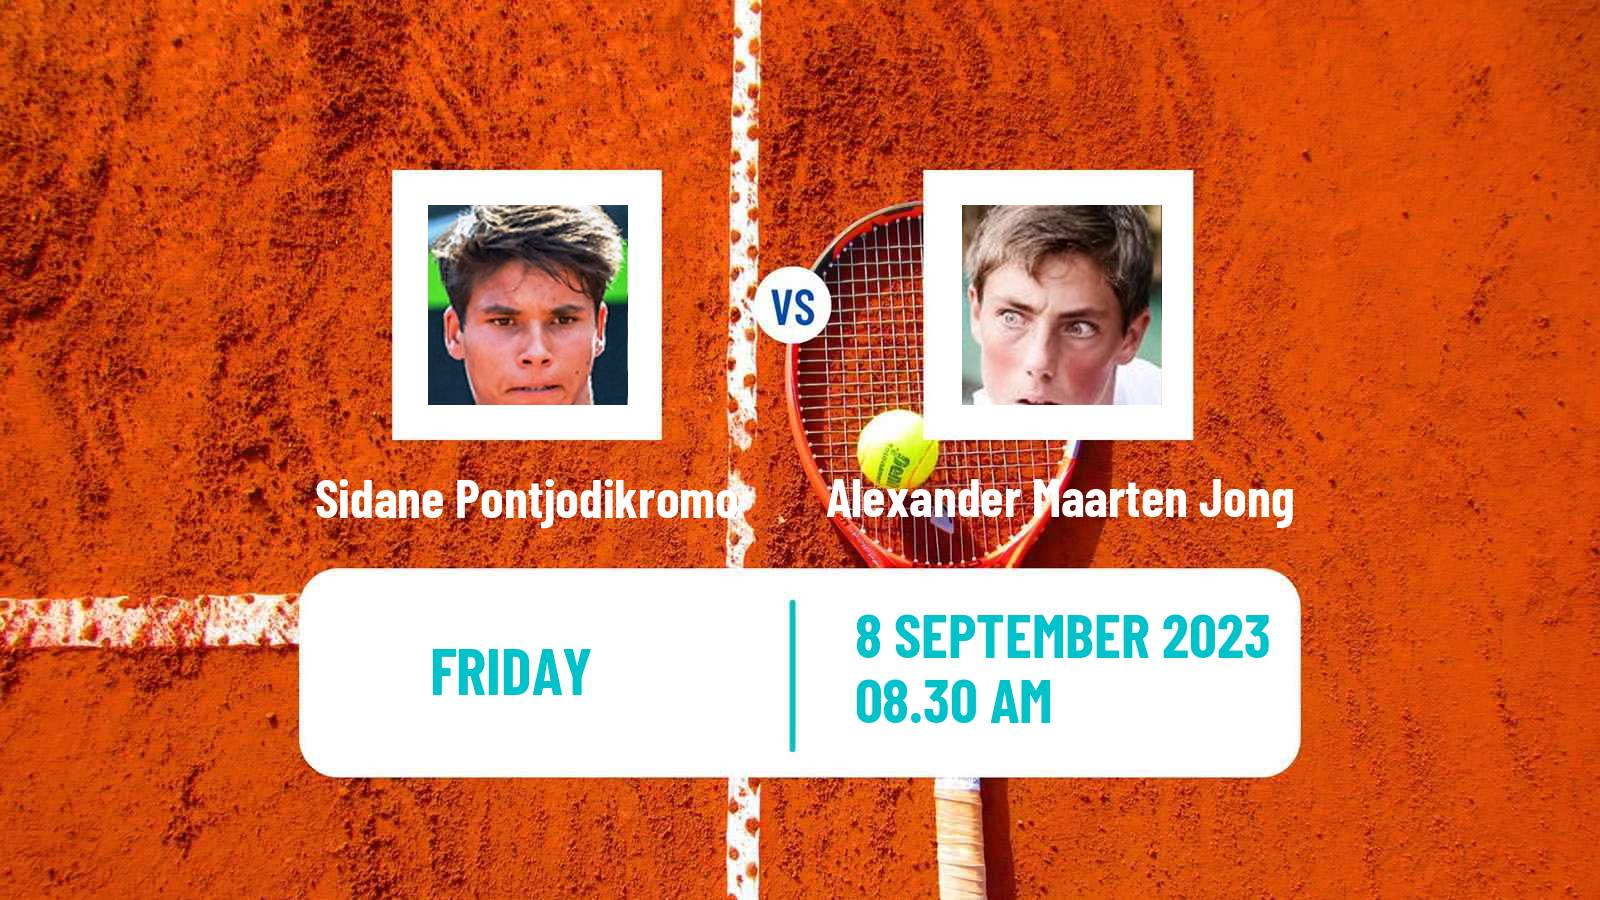 Tennis ITF M15 Haren Men Sidane Pontjodikromo - Alexander Maarten Jong